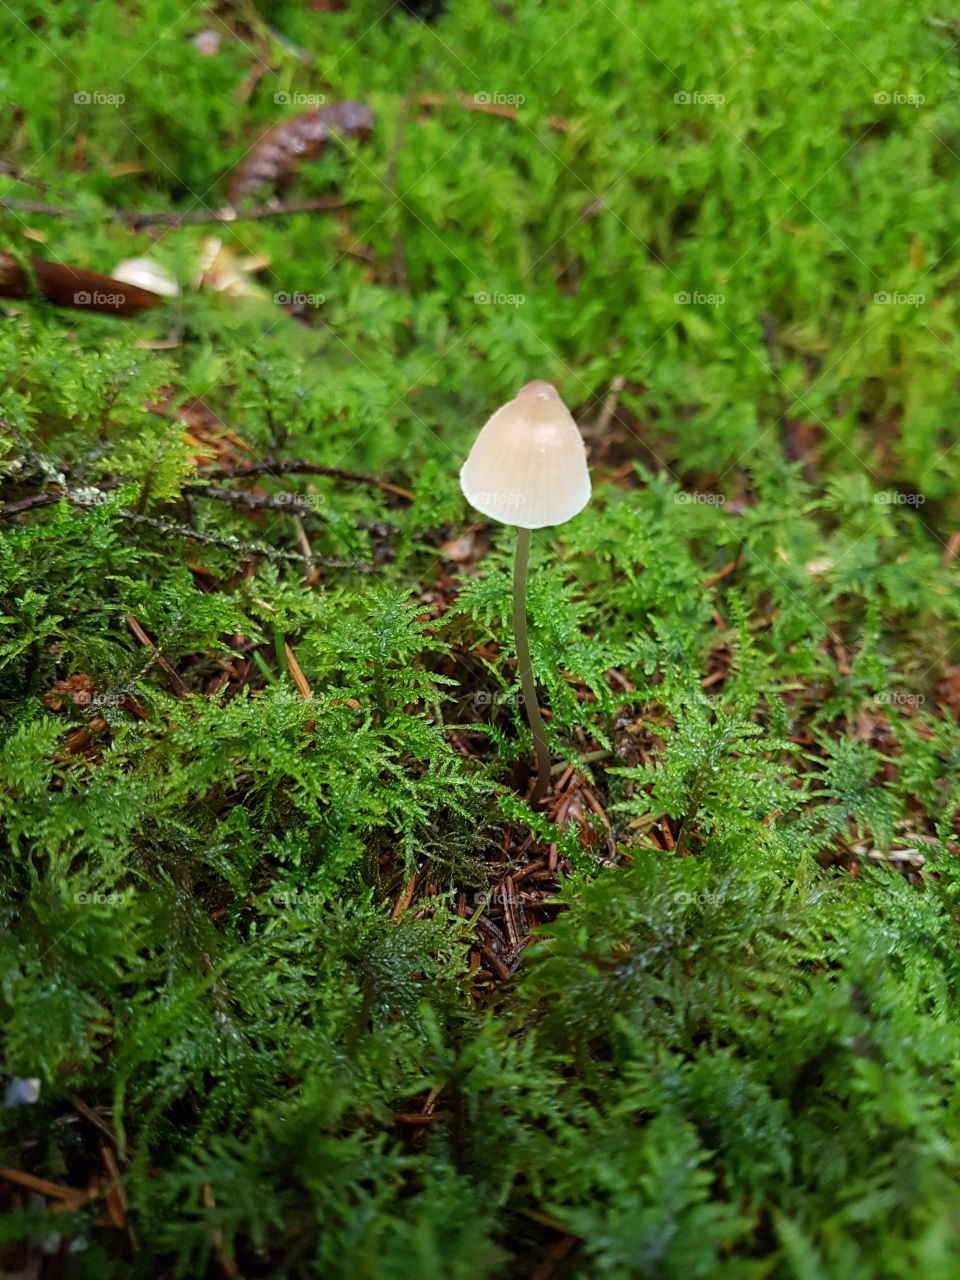 Fungus, Mushroom, Flora, Nature, Wood